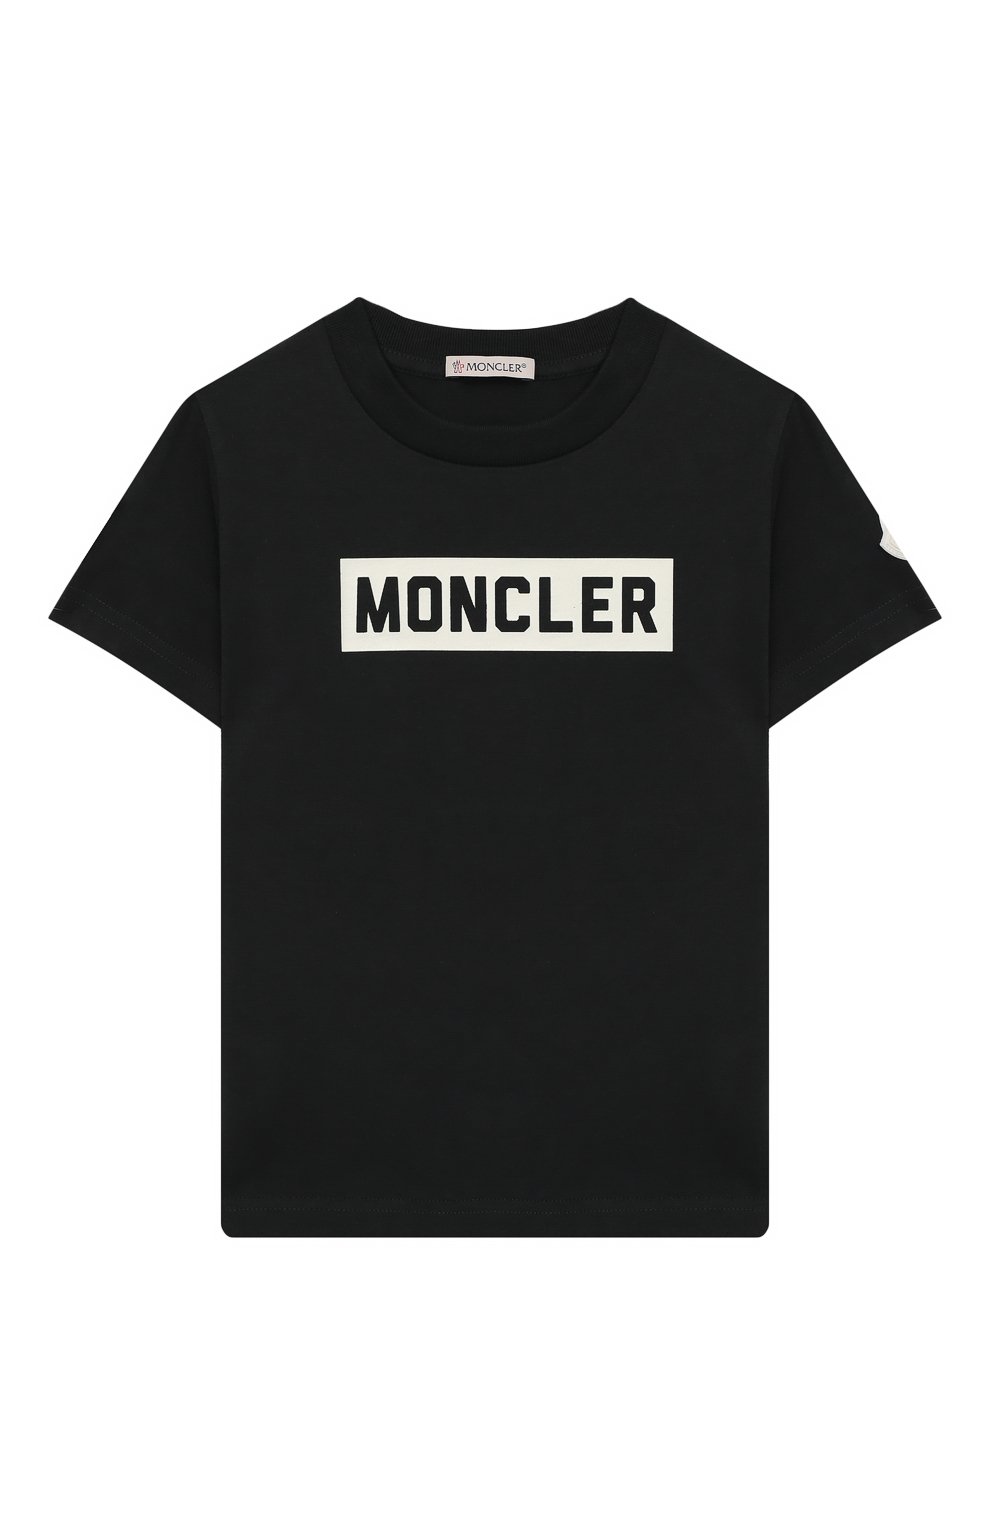 Футболки Moncler Enfant, Хлопковая футболка Moncler Enfant, Португалия, Чёрный, Хлопок: 100%;, 10345152  - купить